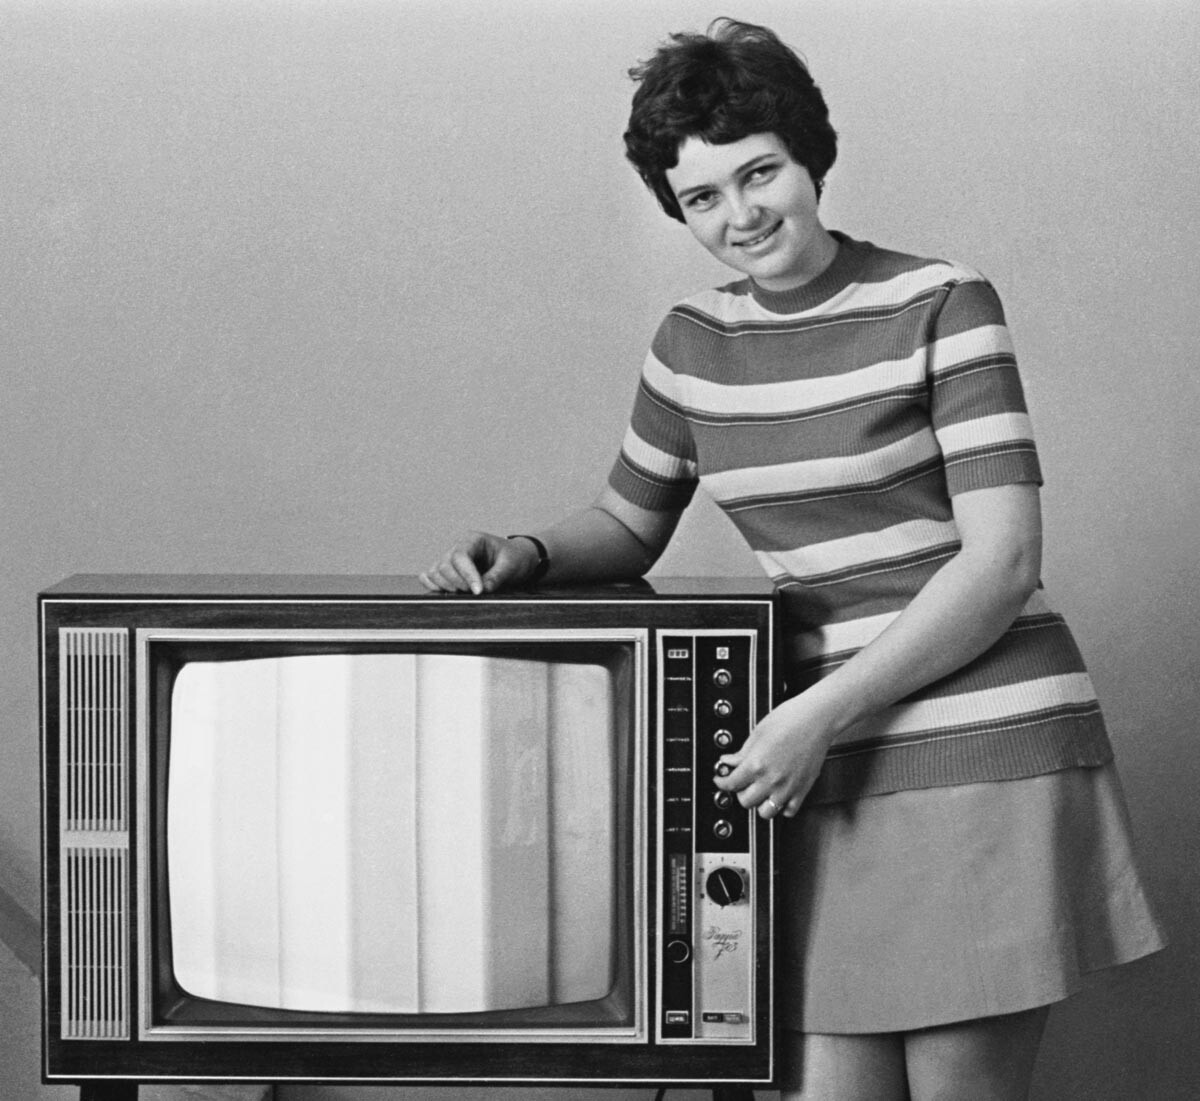 СССР. Ленинград. 2 май 1973 г. Техникът Анна Савелиева по време на демонстрация на цветния телевизор 